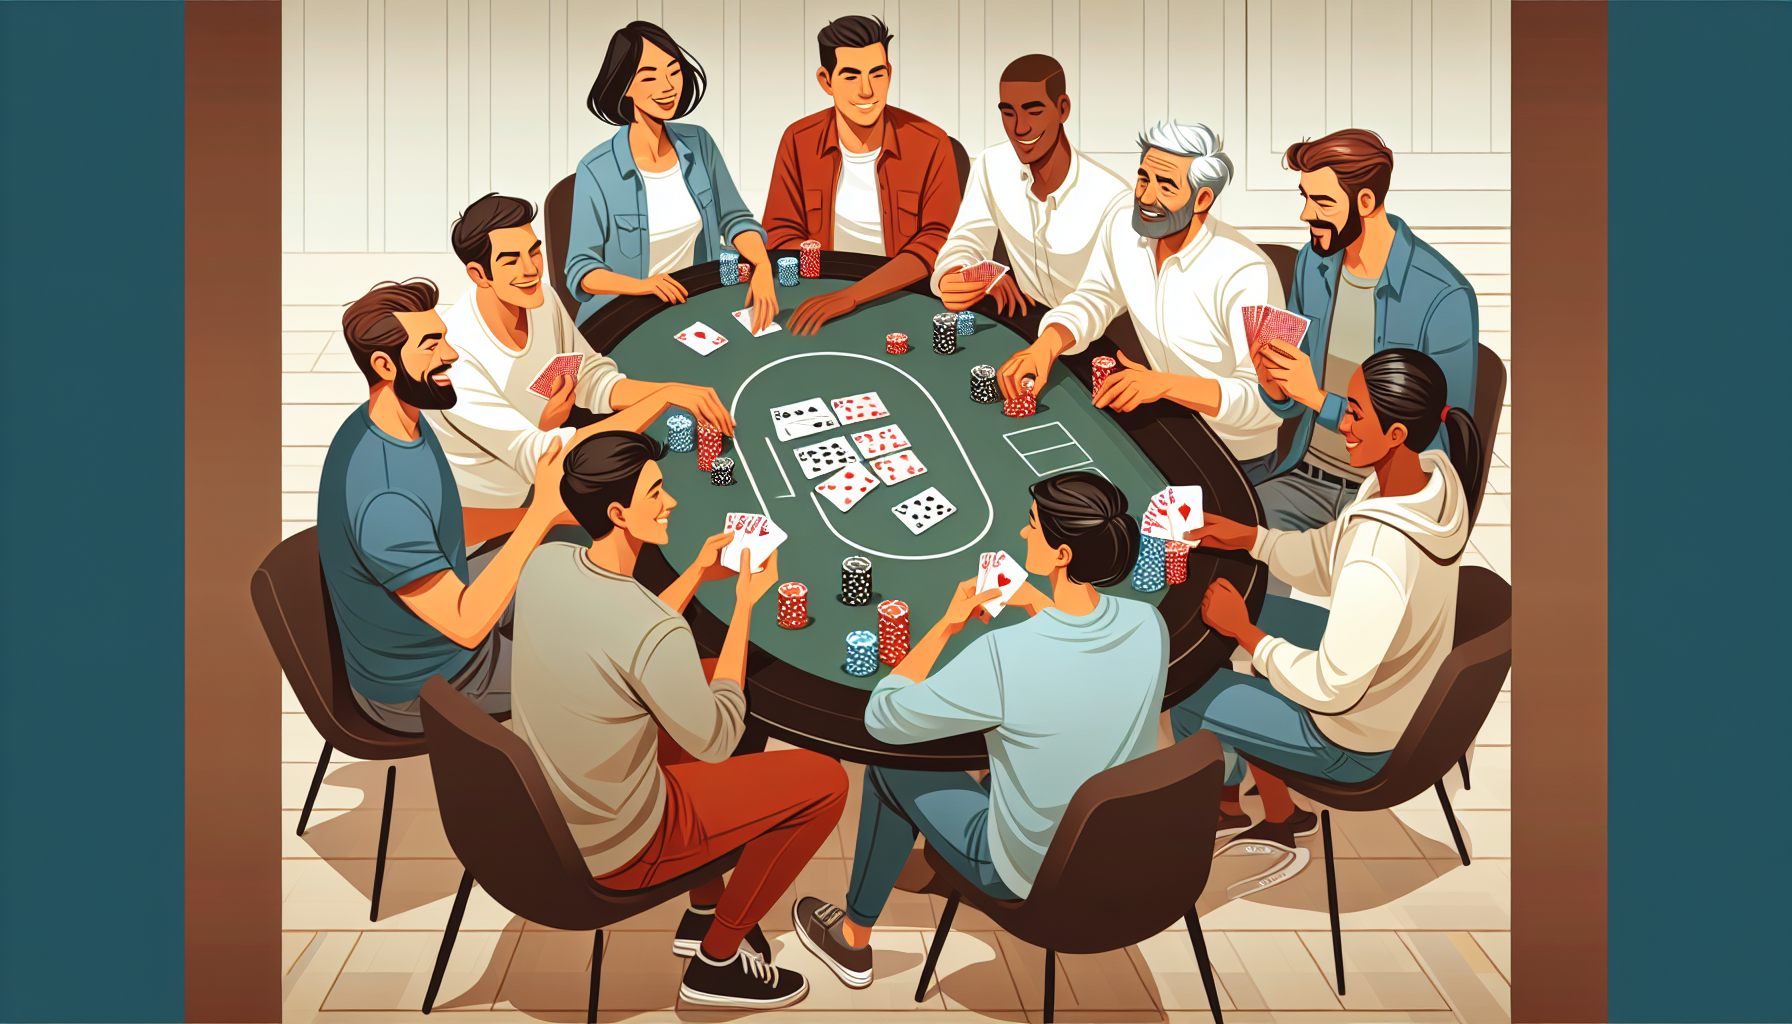 découvrez les règles du poker en société pour des parties conviviales entre amis. apprenez les stratégies et astuces pour devenir un as du poker en société.